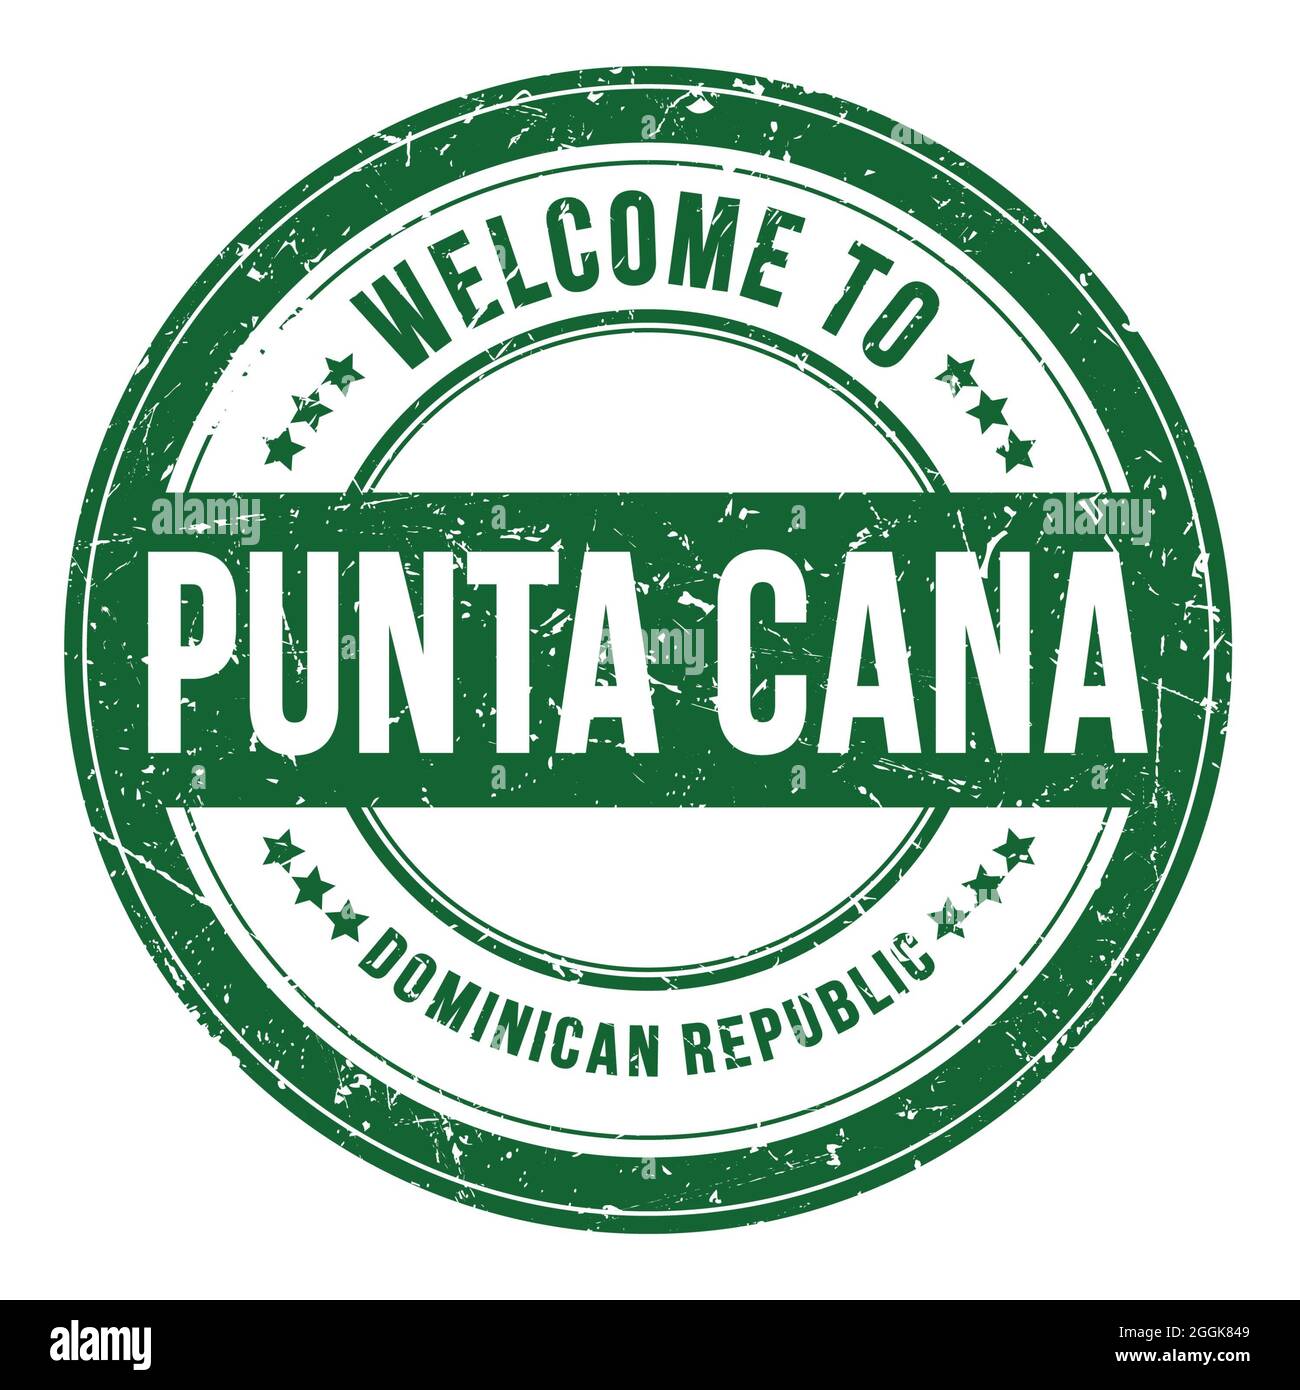 BIENVENUE À PUNTA CANA - RÉPUBLIQUE DOMINICAINE, mots écrits sur le timbre vert rond de pièce Banque D'Images